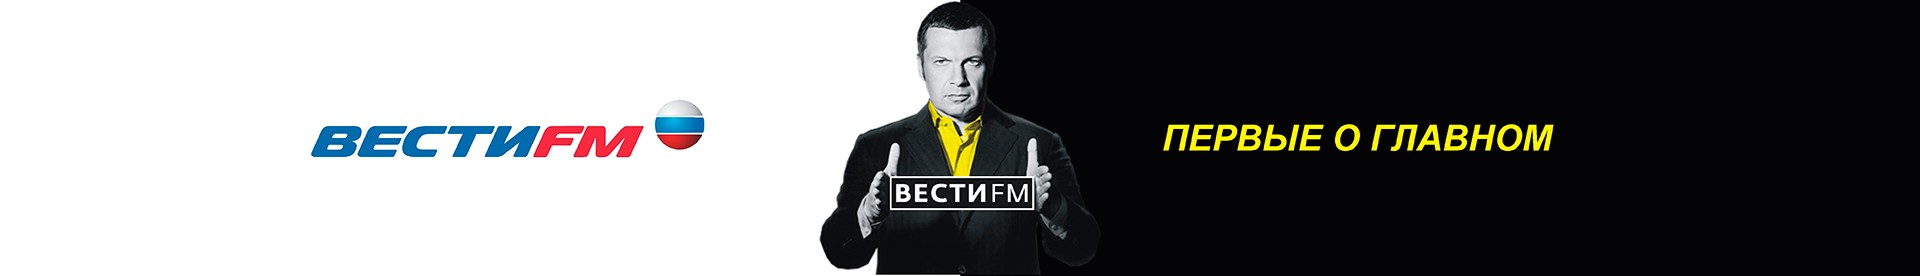 Радио вести 24 фм. Вести ФМ. Вести ФМ Иркутск. Вести ФМ реклама. Радио 92.0 СПБ.